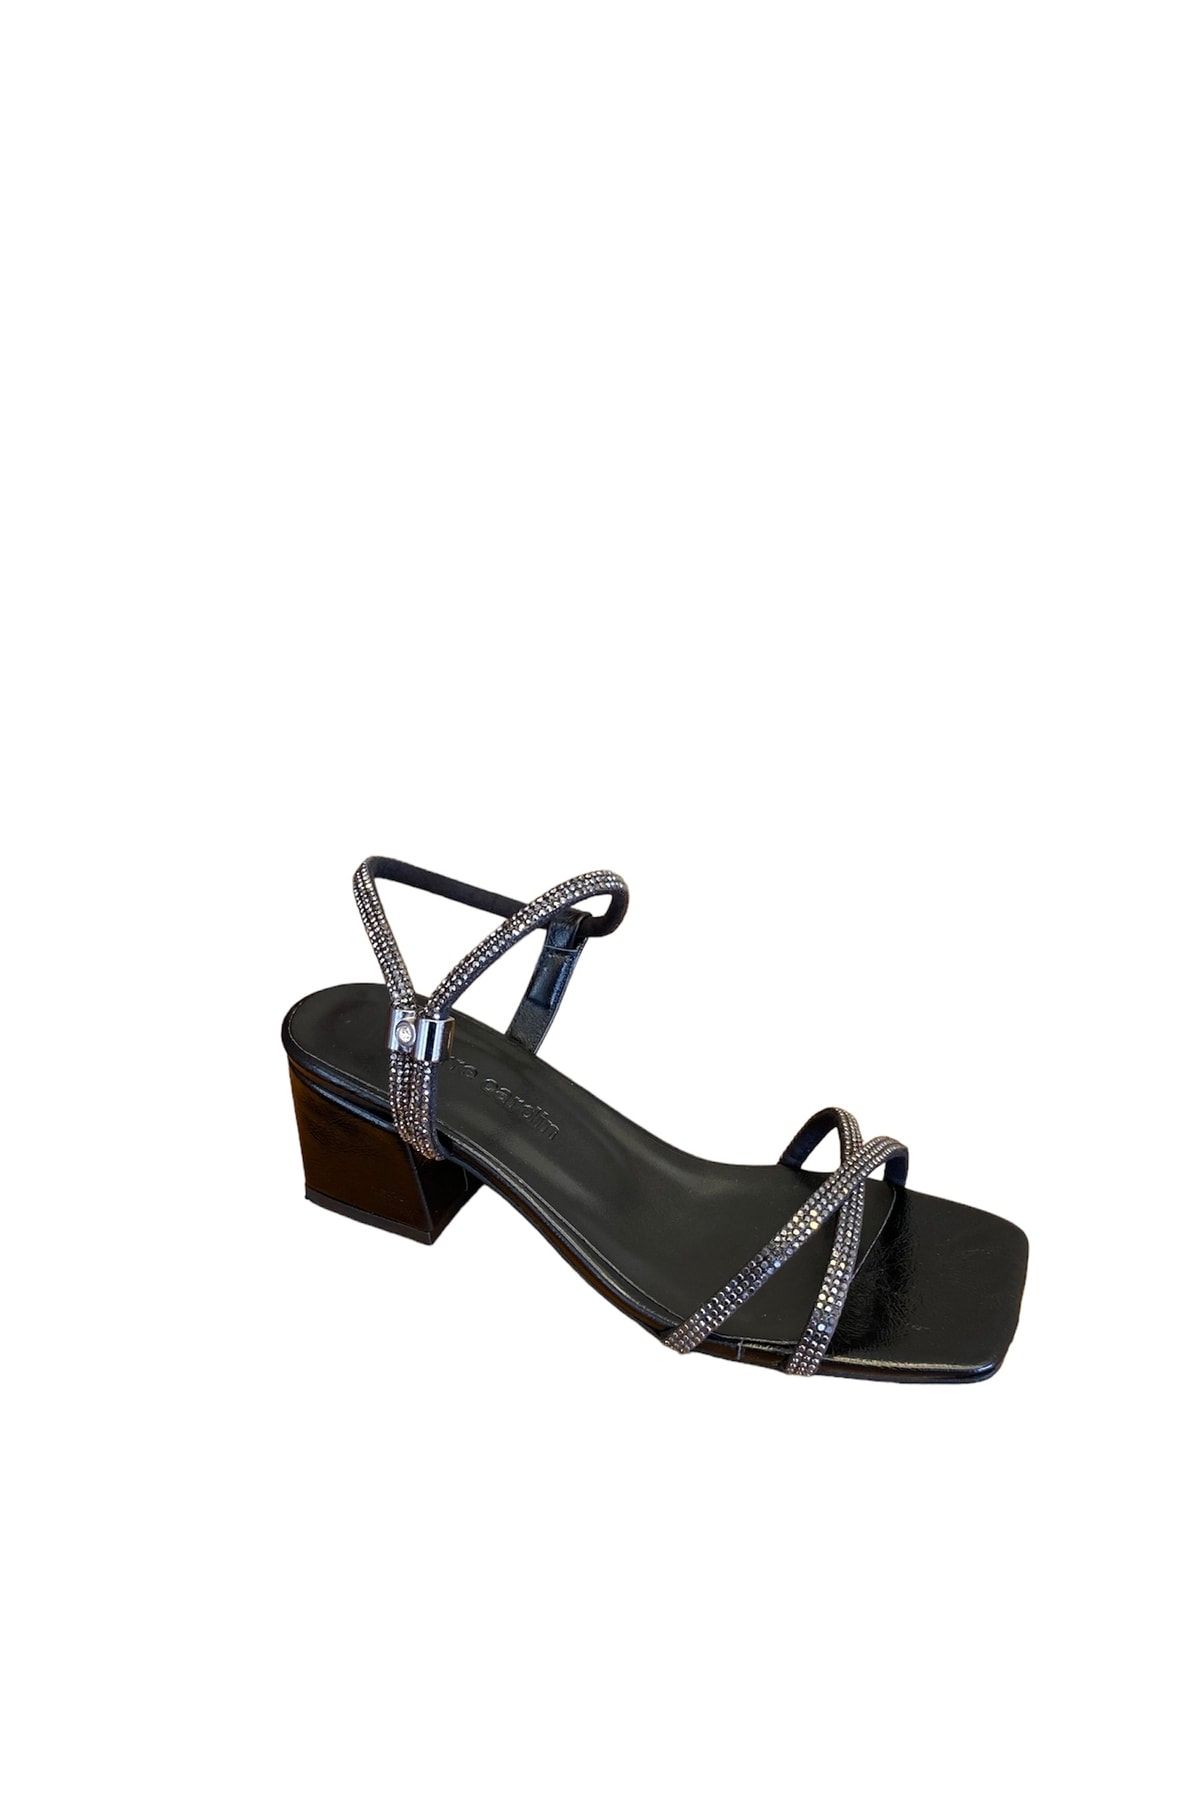 Pierre Cardin Pc-52286 Az Topuklu Taşlı Bilekten Ayarlanabilir Kadın Abiye Ayakkabı Sandalet